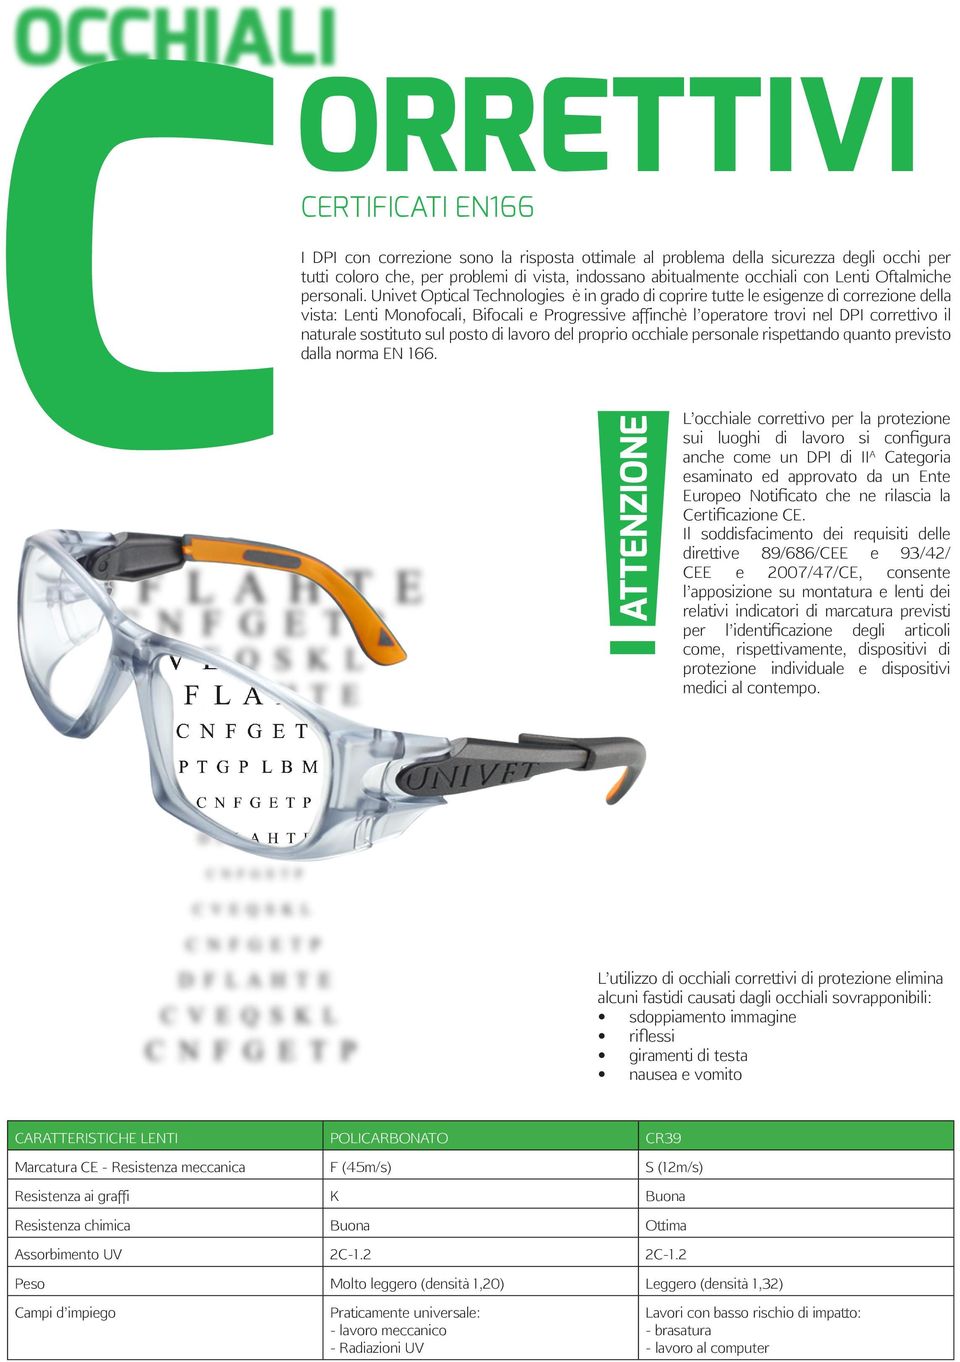 Univet Optical Technologies è in grado di coprire tutte le esigenze di correzione della vista: Lenti Monofocali, Bifocali e Progressive affinchè l operatore trovi nel DPI correttivo il naturale